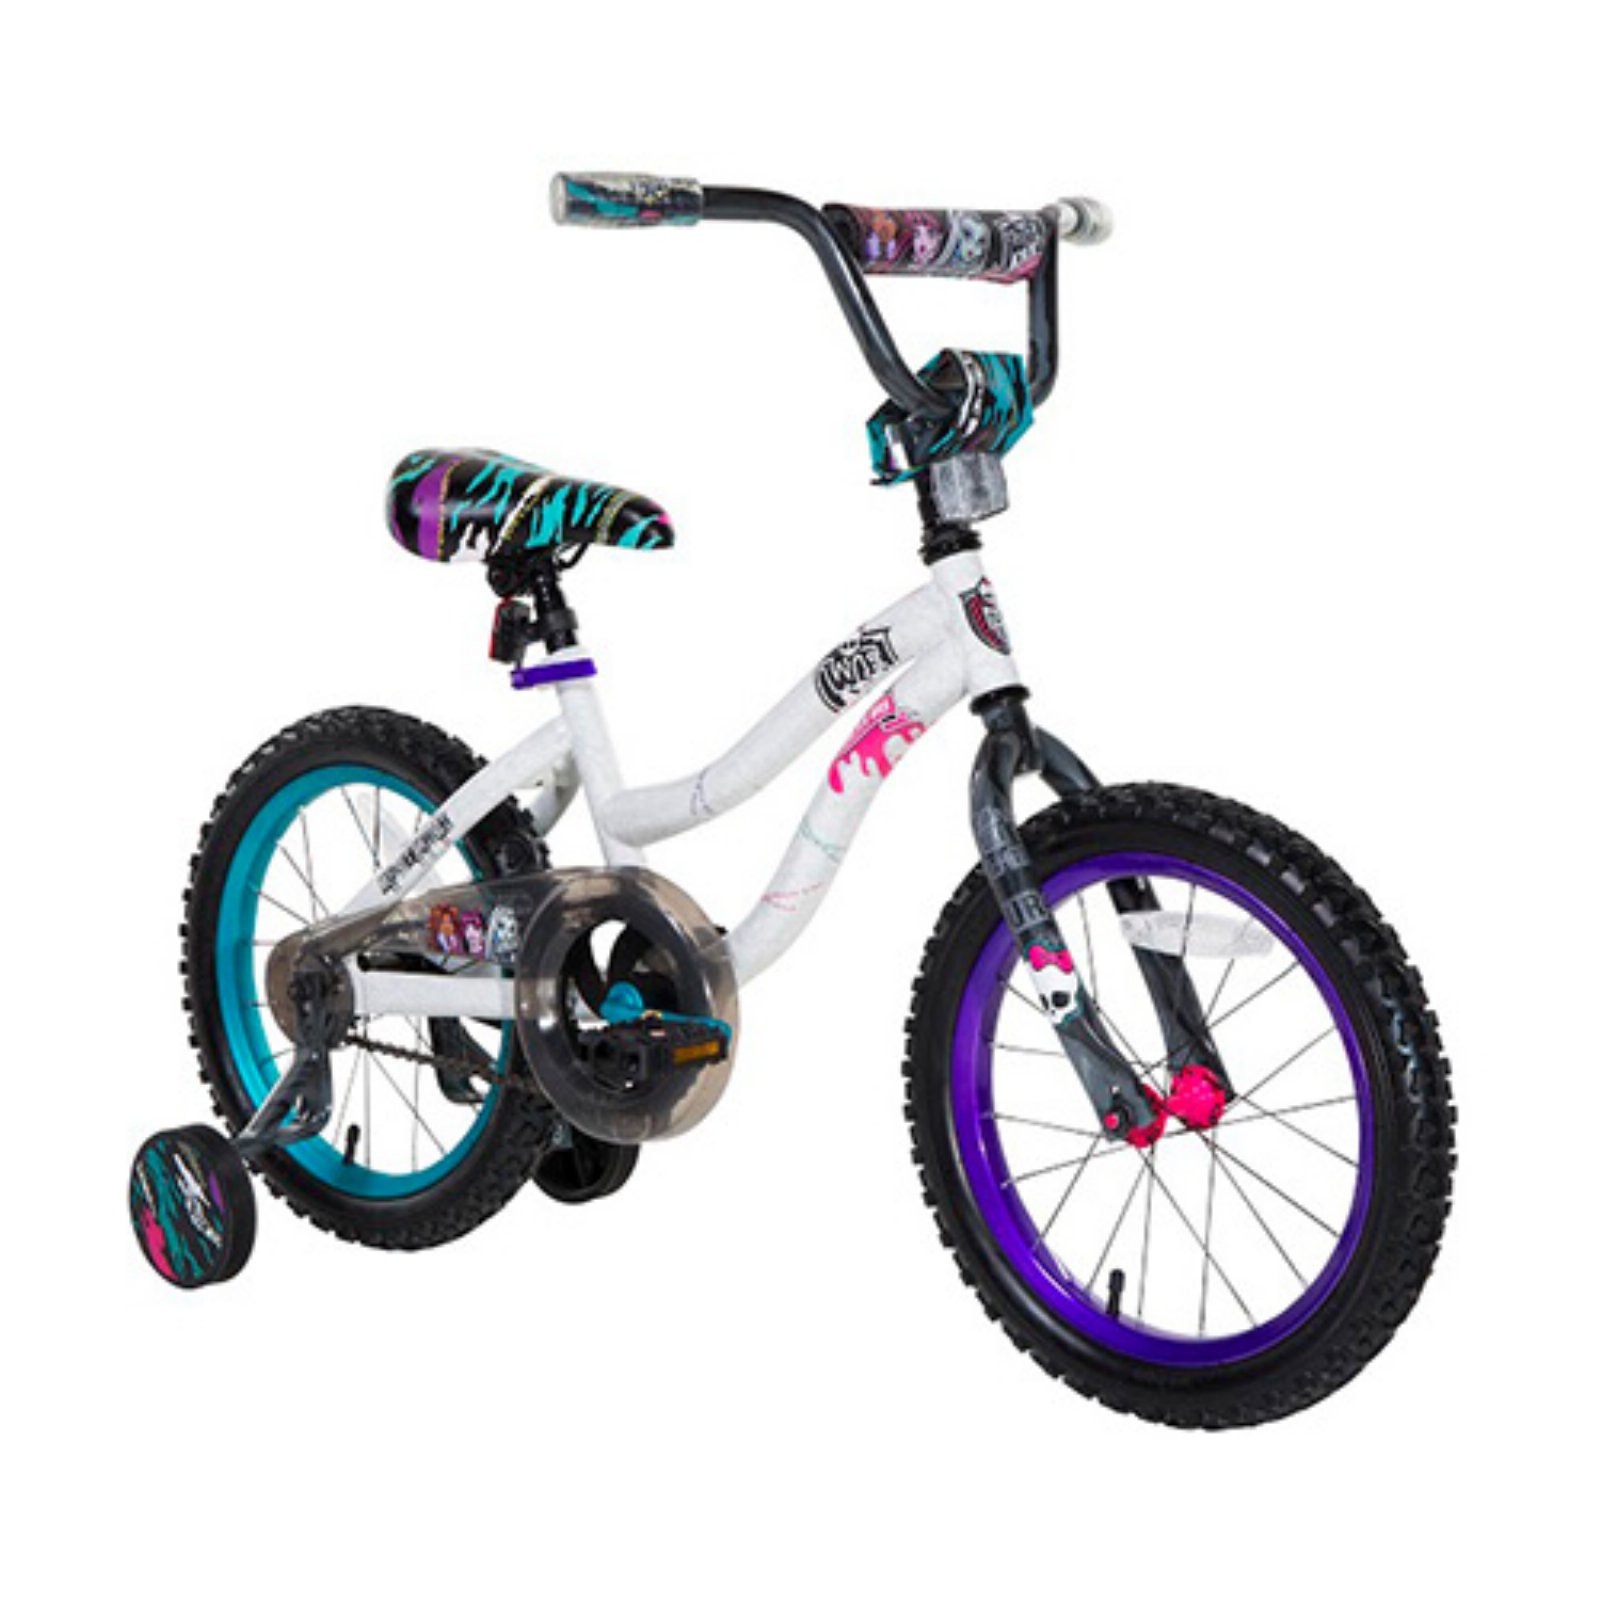 16" Girl's Monster High Bike - image 1 of 5